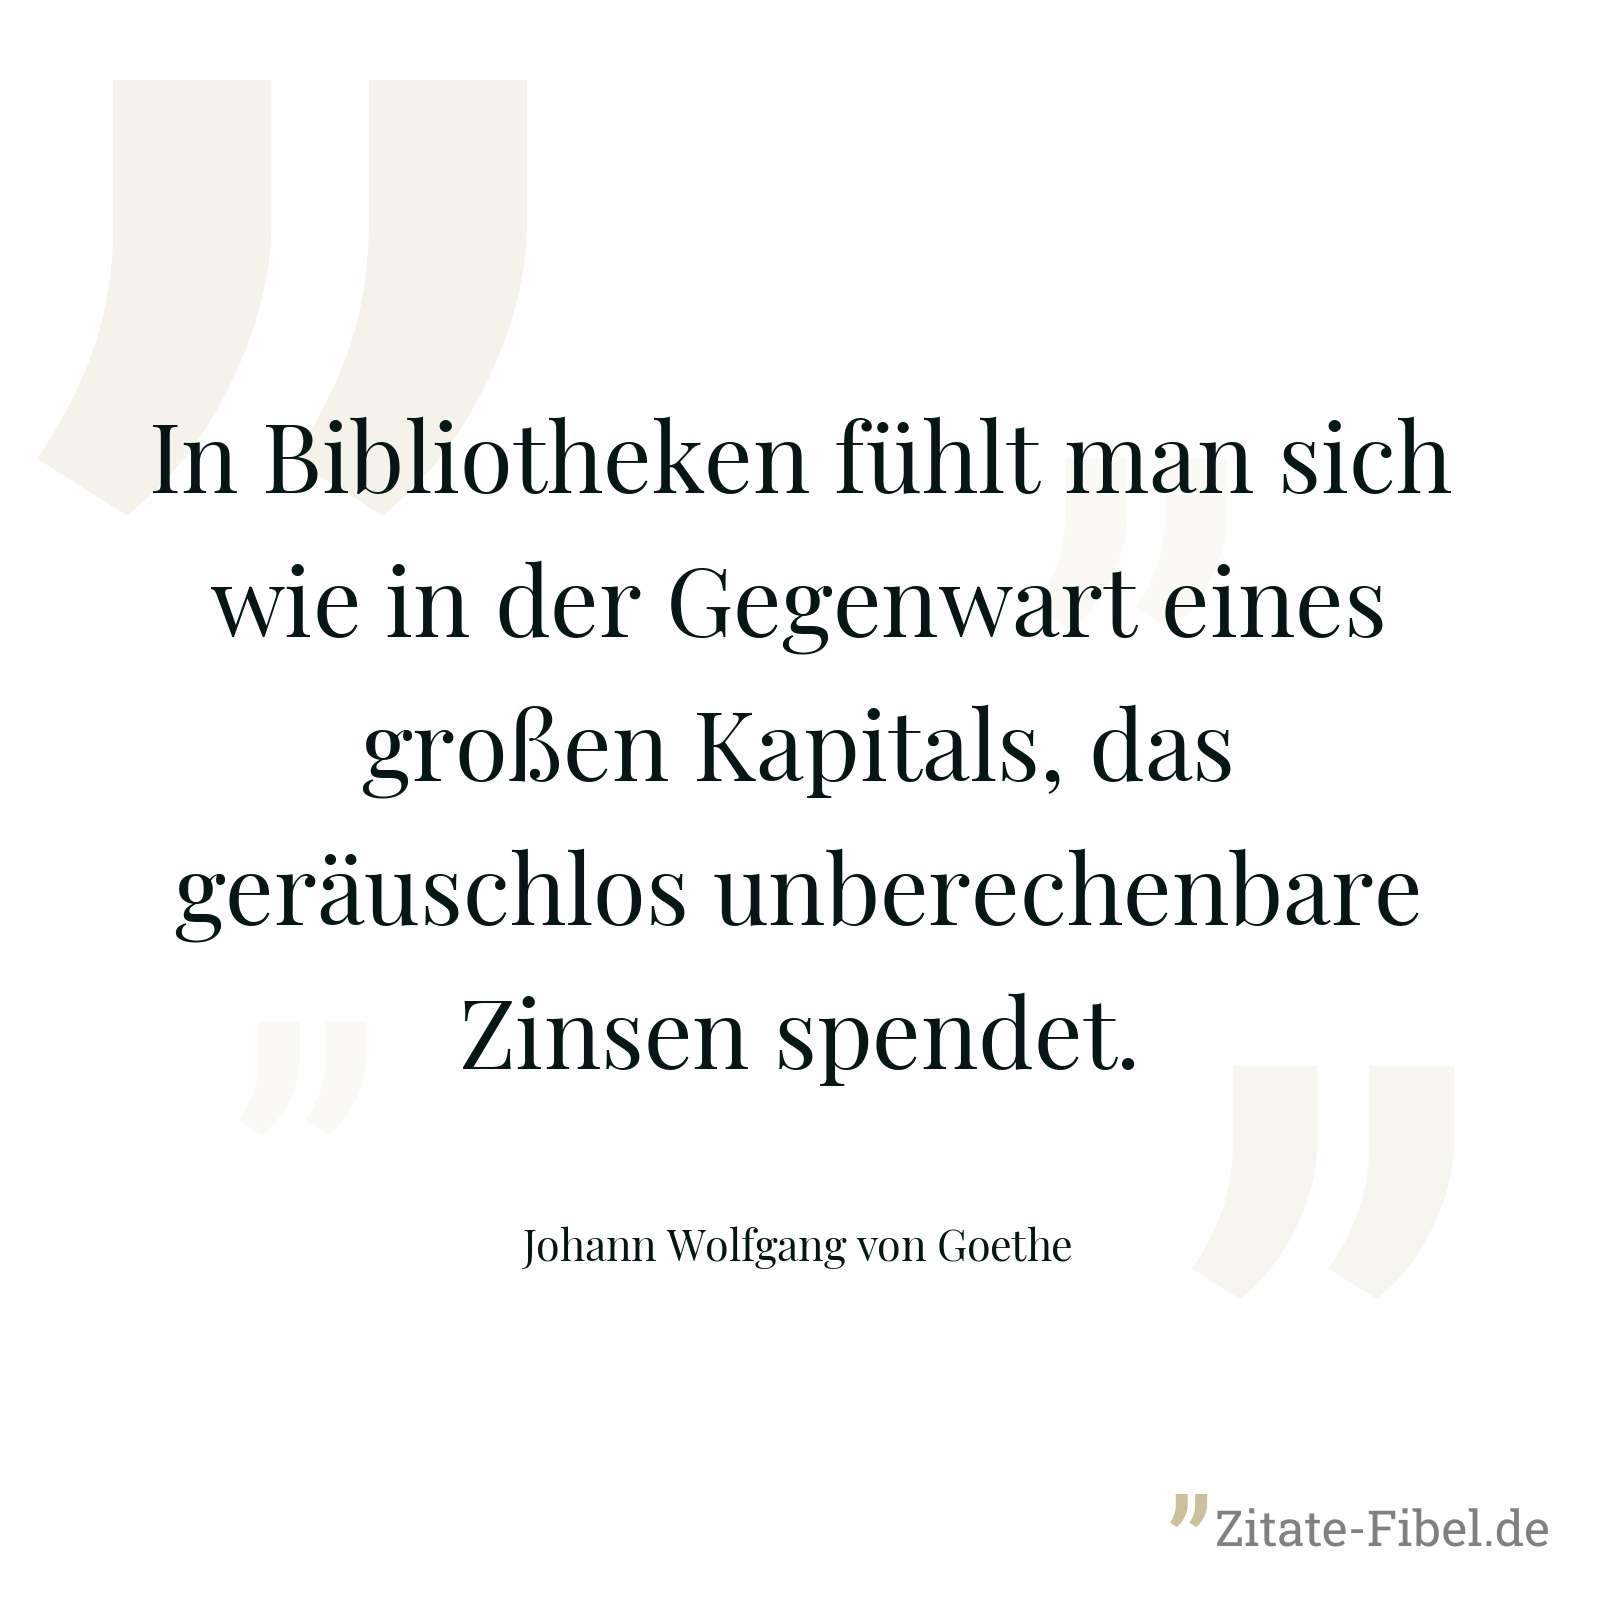 In Bibliotheken fühlt man sich wie in der Gegenwart eines großen Kapitals, das geräuschlos unberechenbare Zinsen spendet. - Johann Wolfgang von Goethe